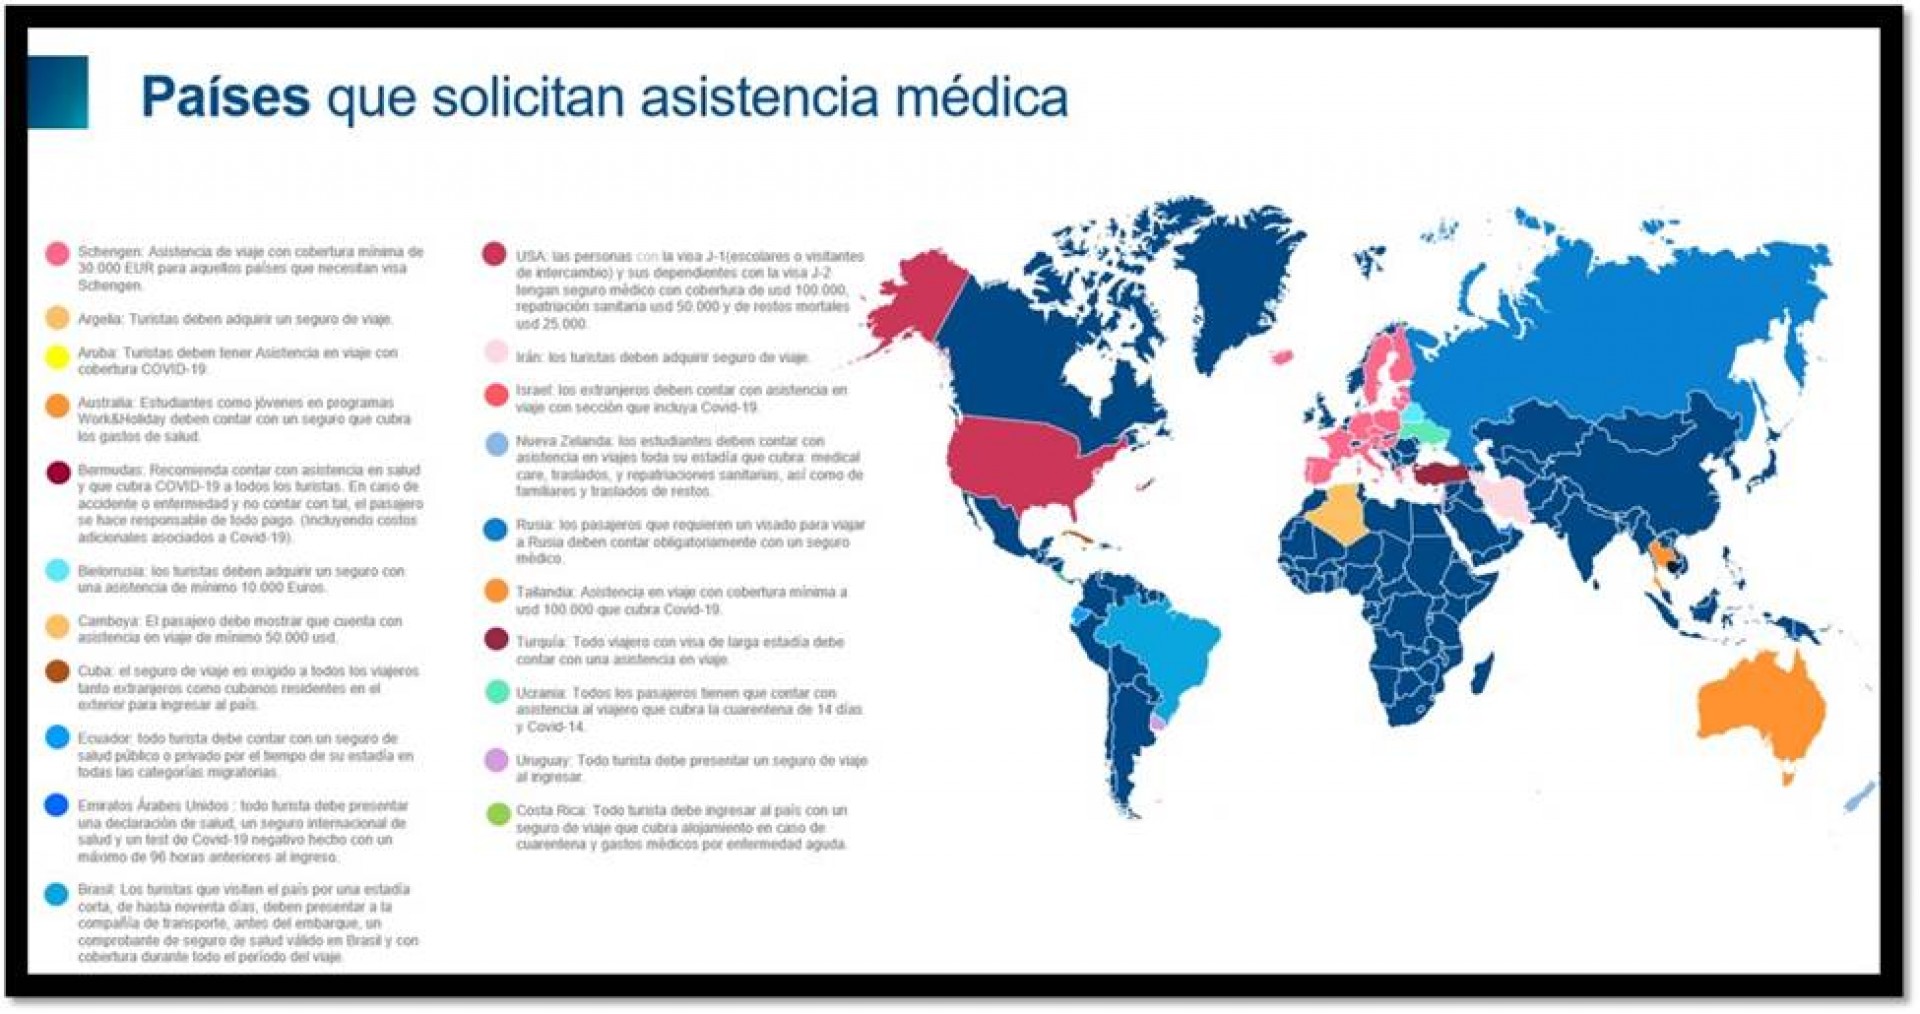 Países que solicitan asistencia médica por COVID-19